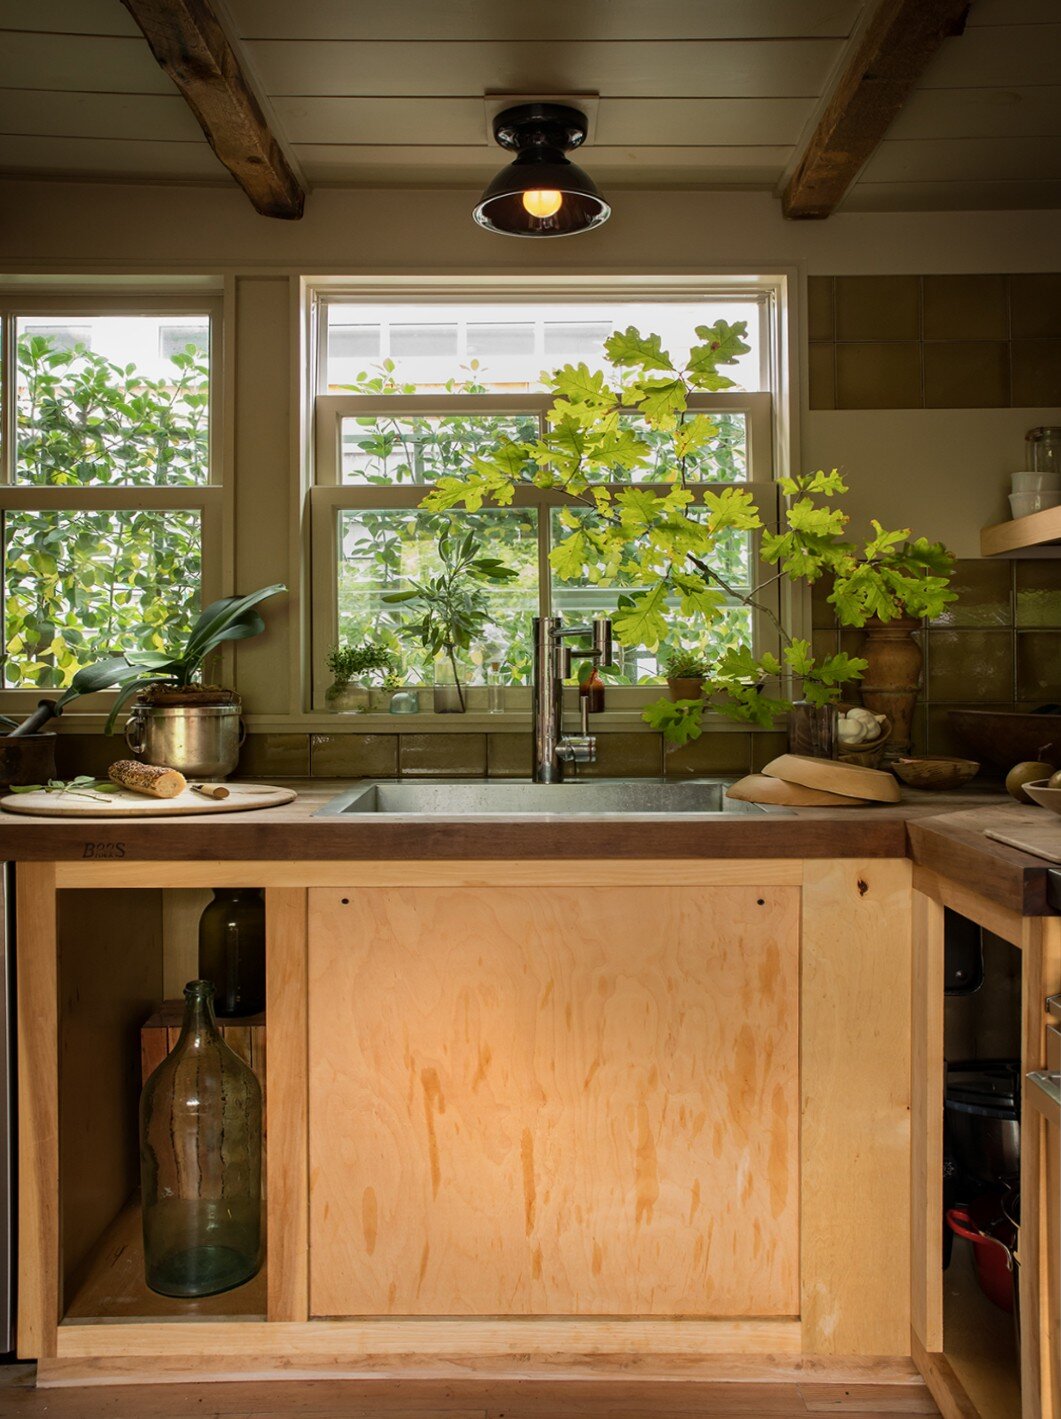 hein-cozzi-ptown-kitchen-sink.jpg